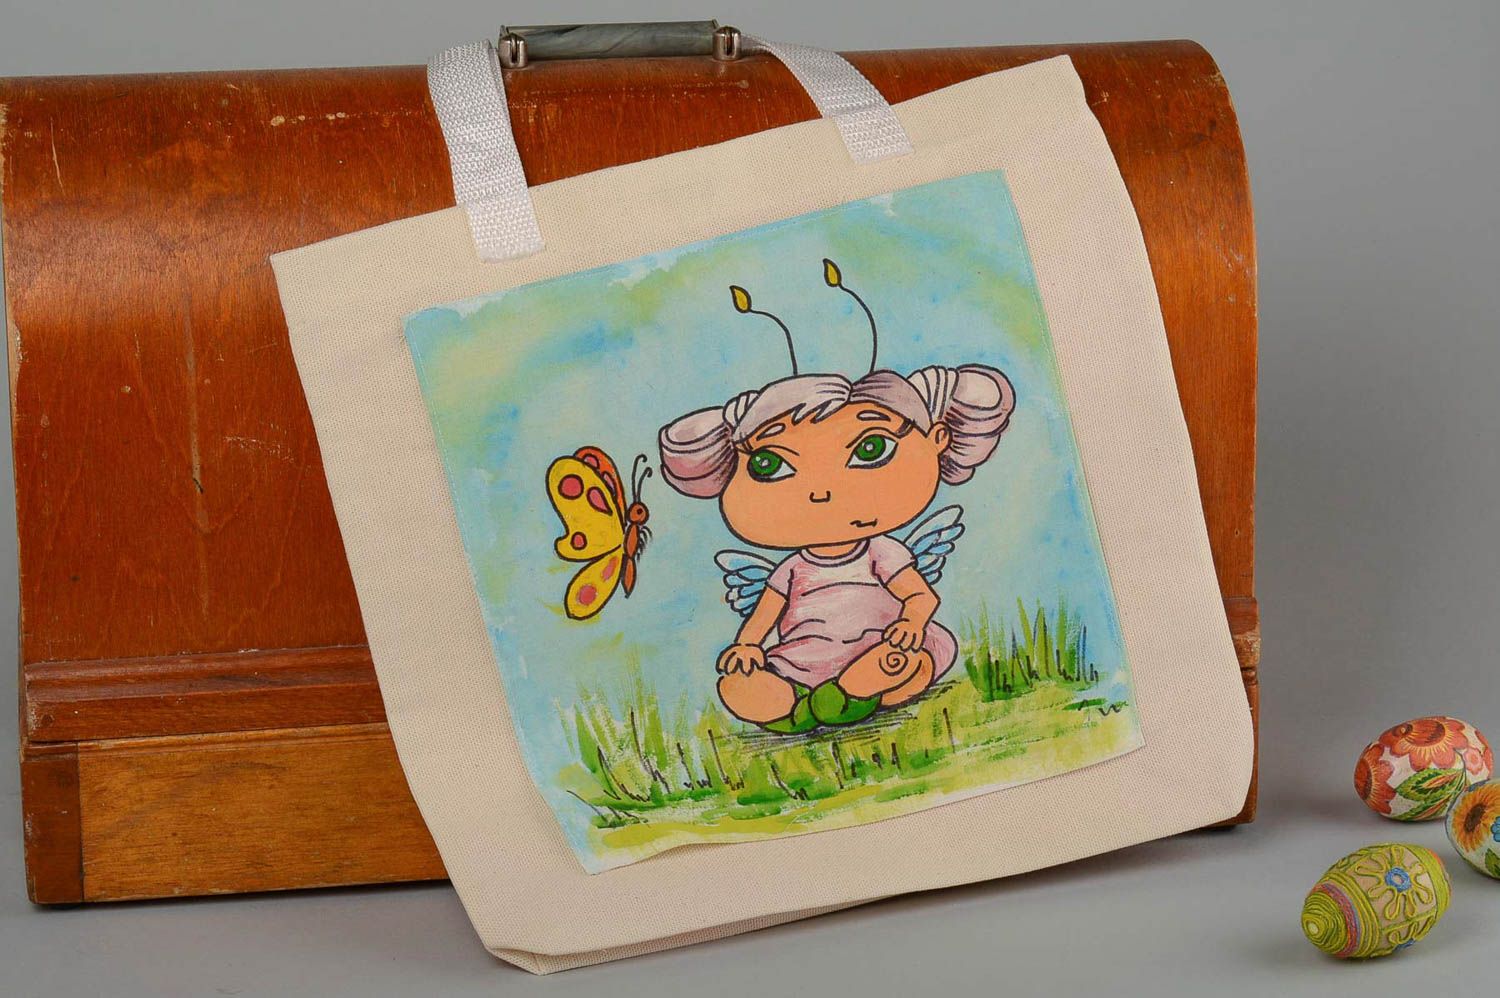 Сумка ручной работы сумка с рисунком детским яркая расписная женская сумка  фото 1